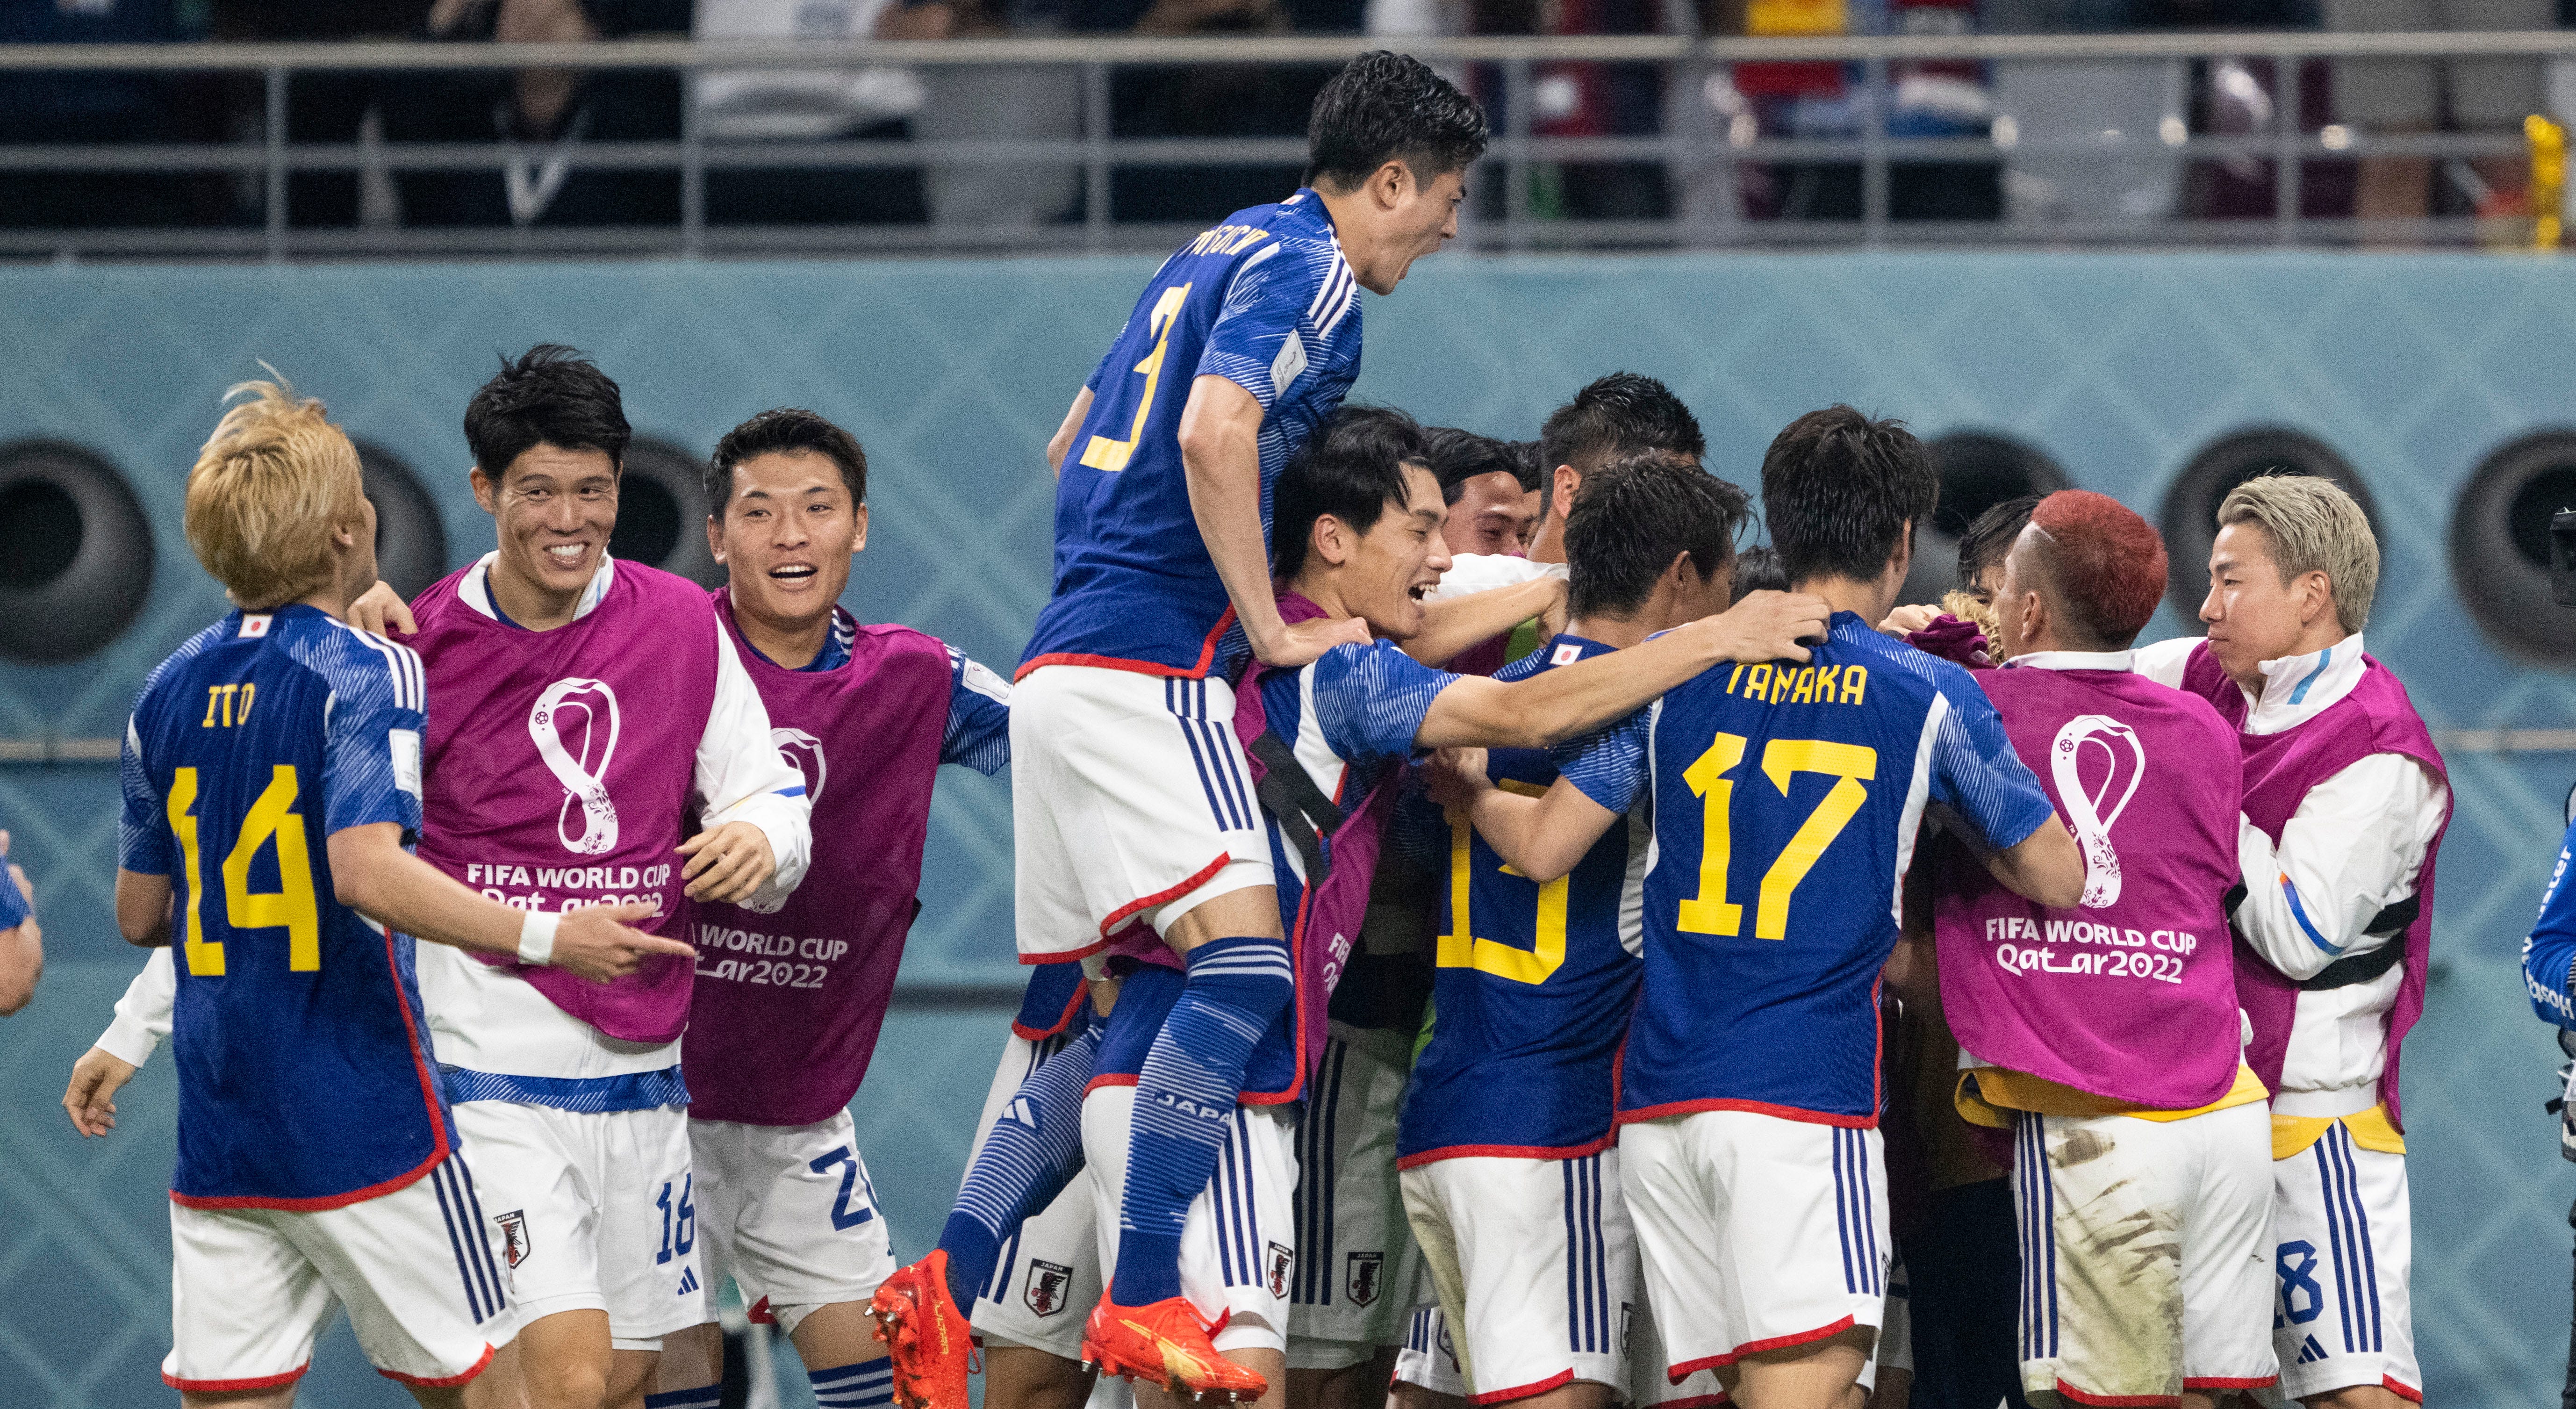 Ritsu Doan of Japan celebrates after scoring their team's first